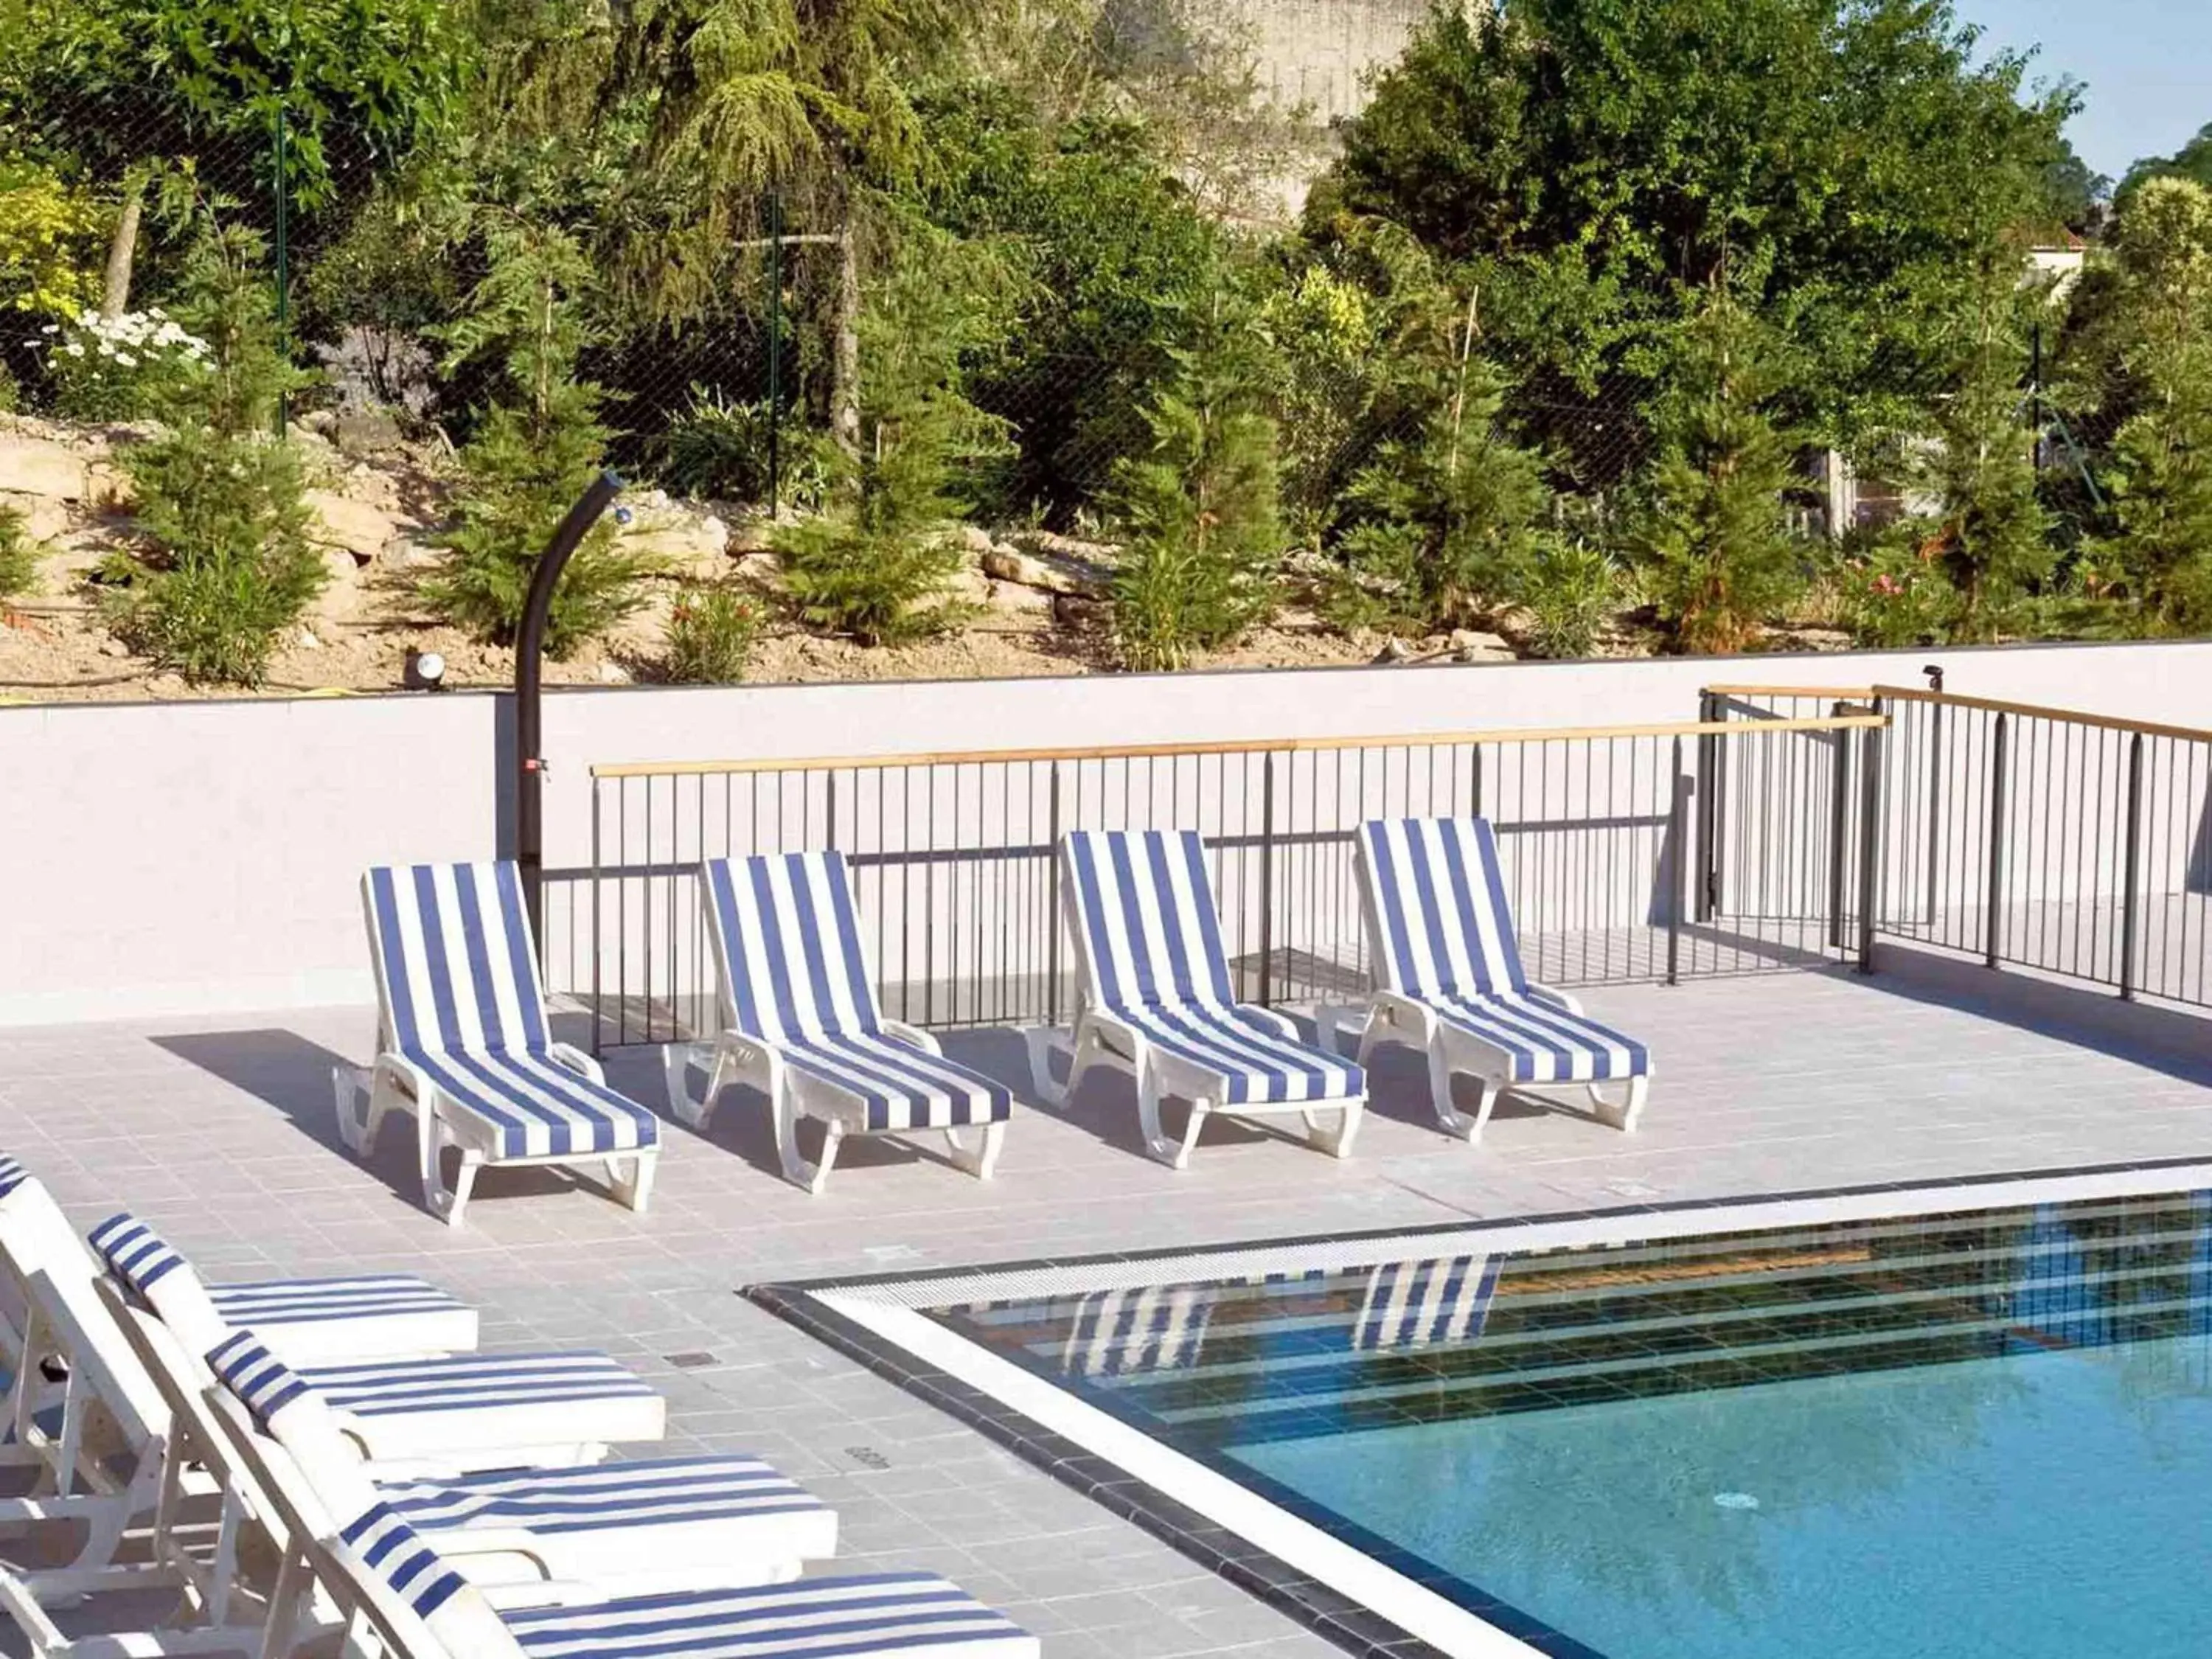 On site, Pool View in Mercure Carcassonne La Cité - entièrement rénové